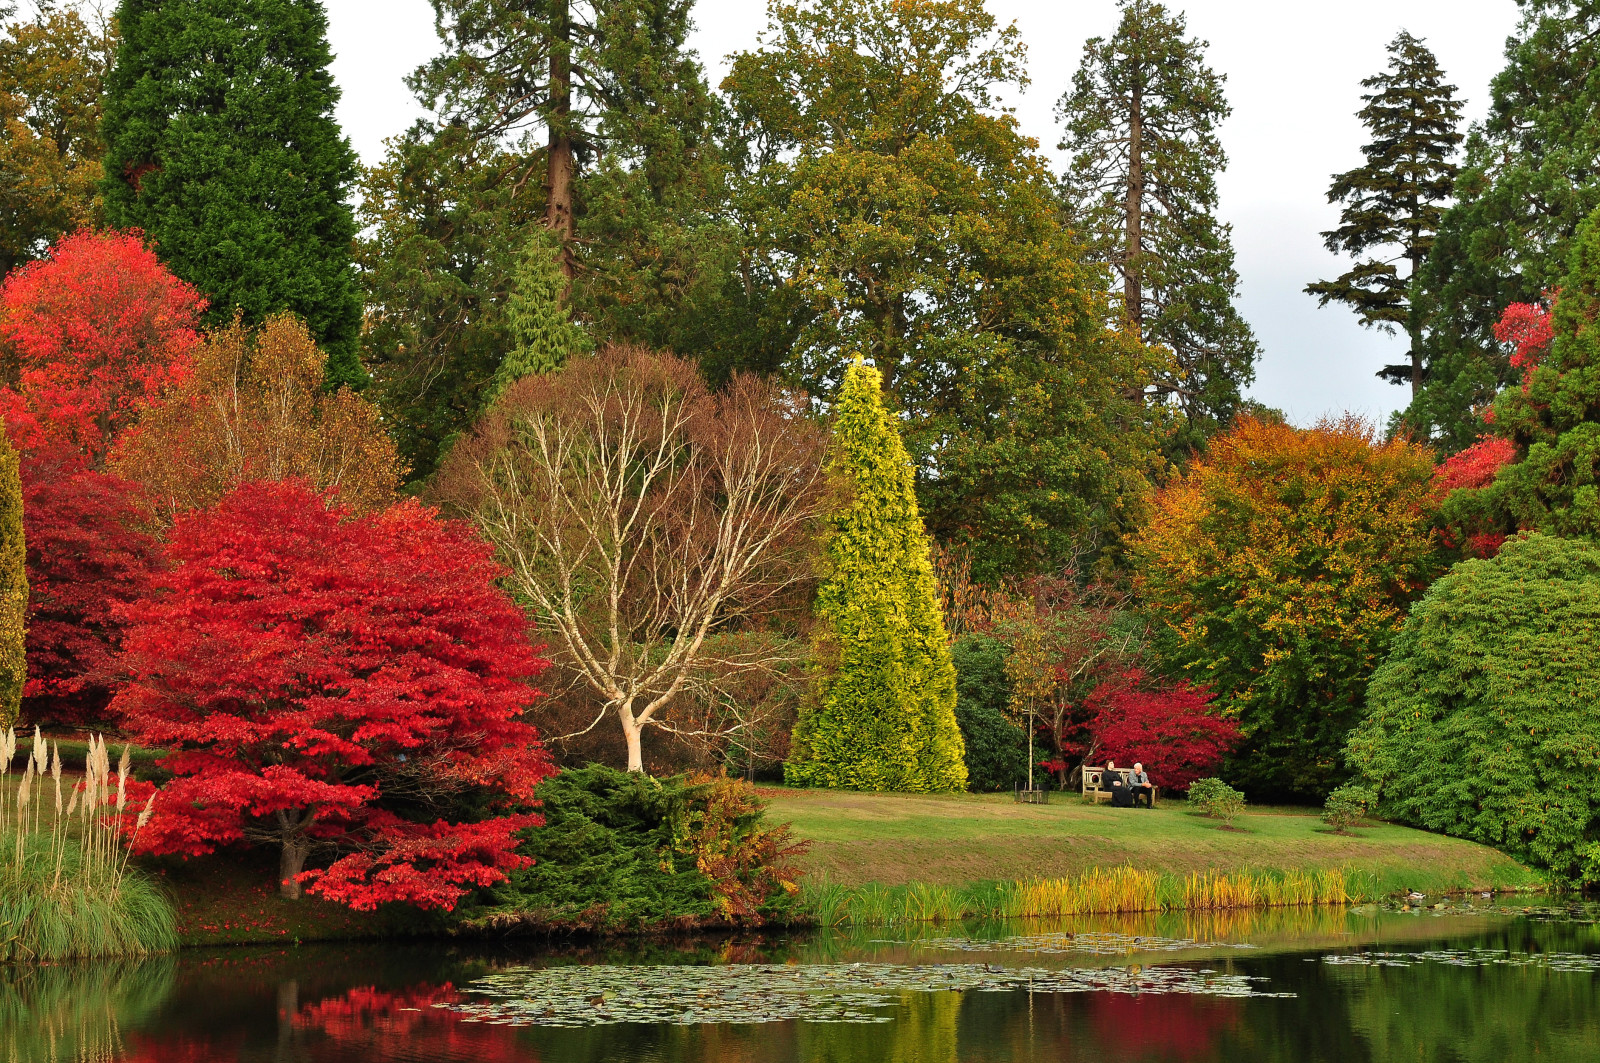 秋季, 公园, 树木, 草坪, 池塘, 英国, 留, 板凳